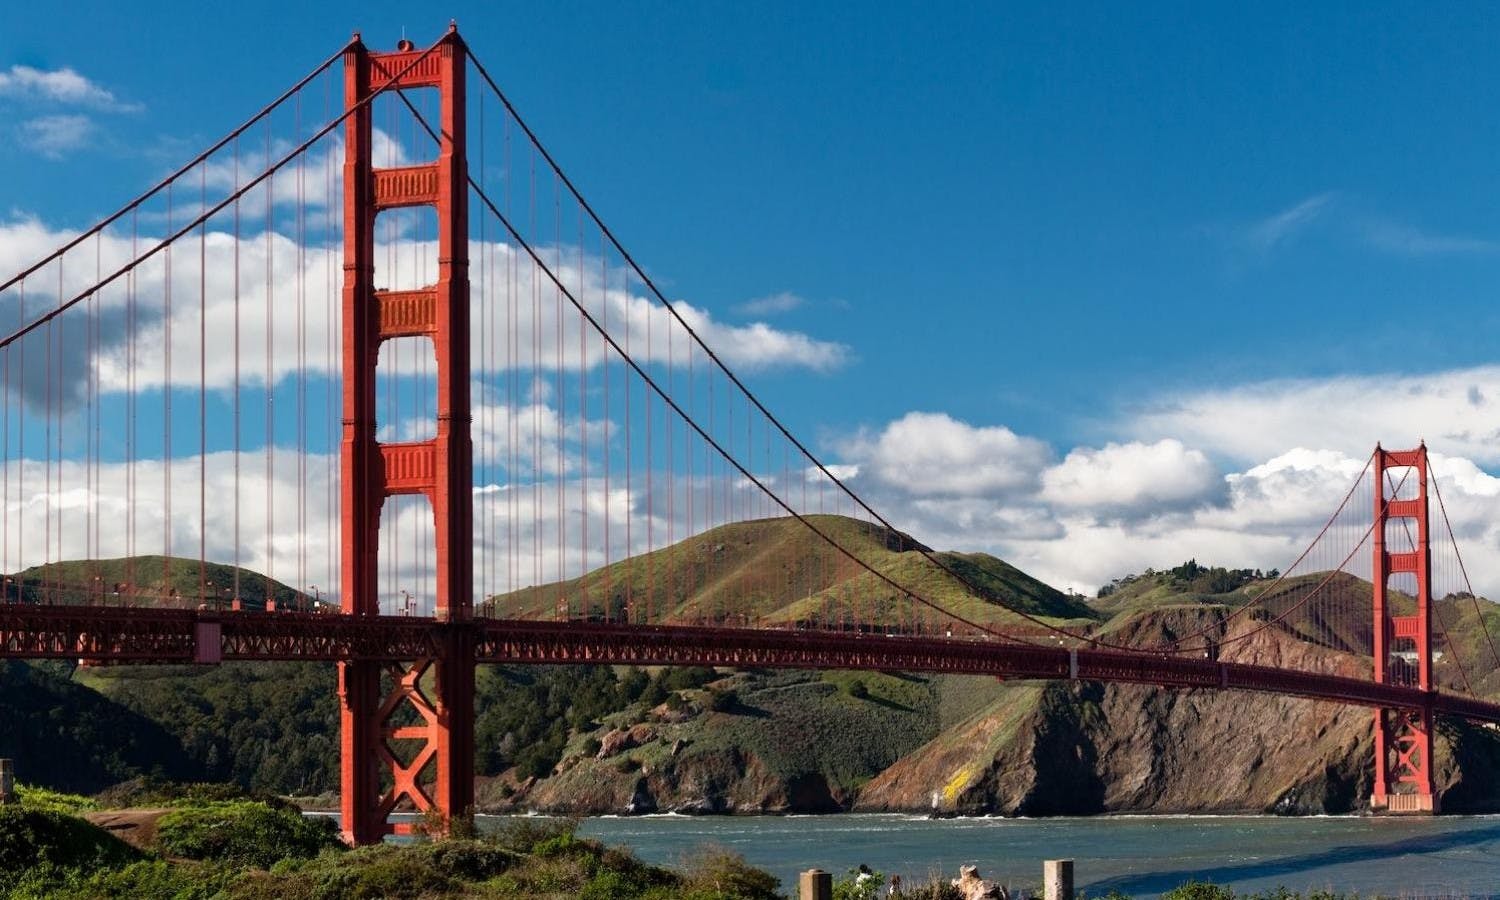 Stadtrundfahrt in San Francisco und Muir Woods kombiniert